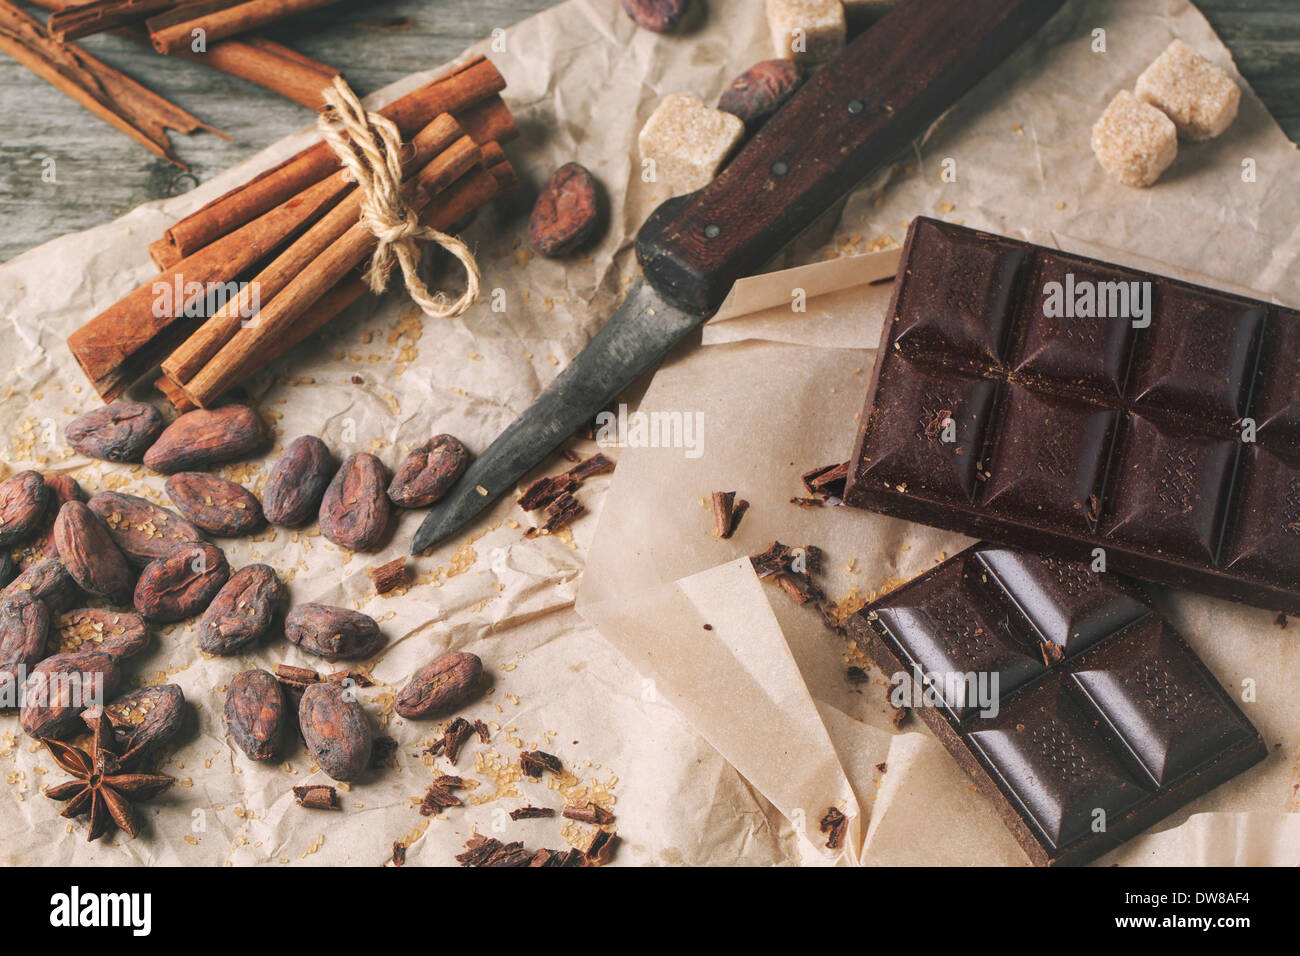 Draufsicht auf dunkle Schokolade mit altes Messer, Kakao, Zimt und Anis auf zerknittertes Papier. Stockfoto